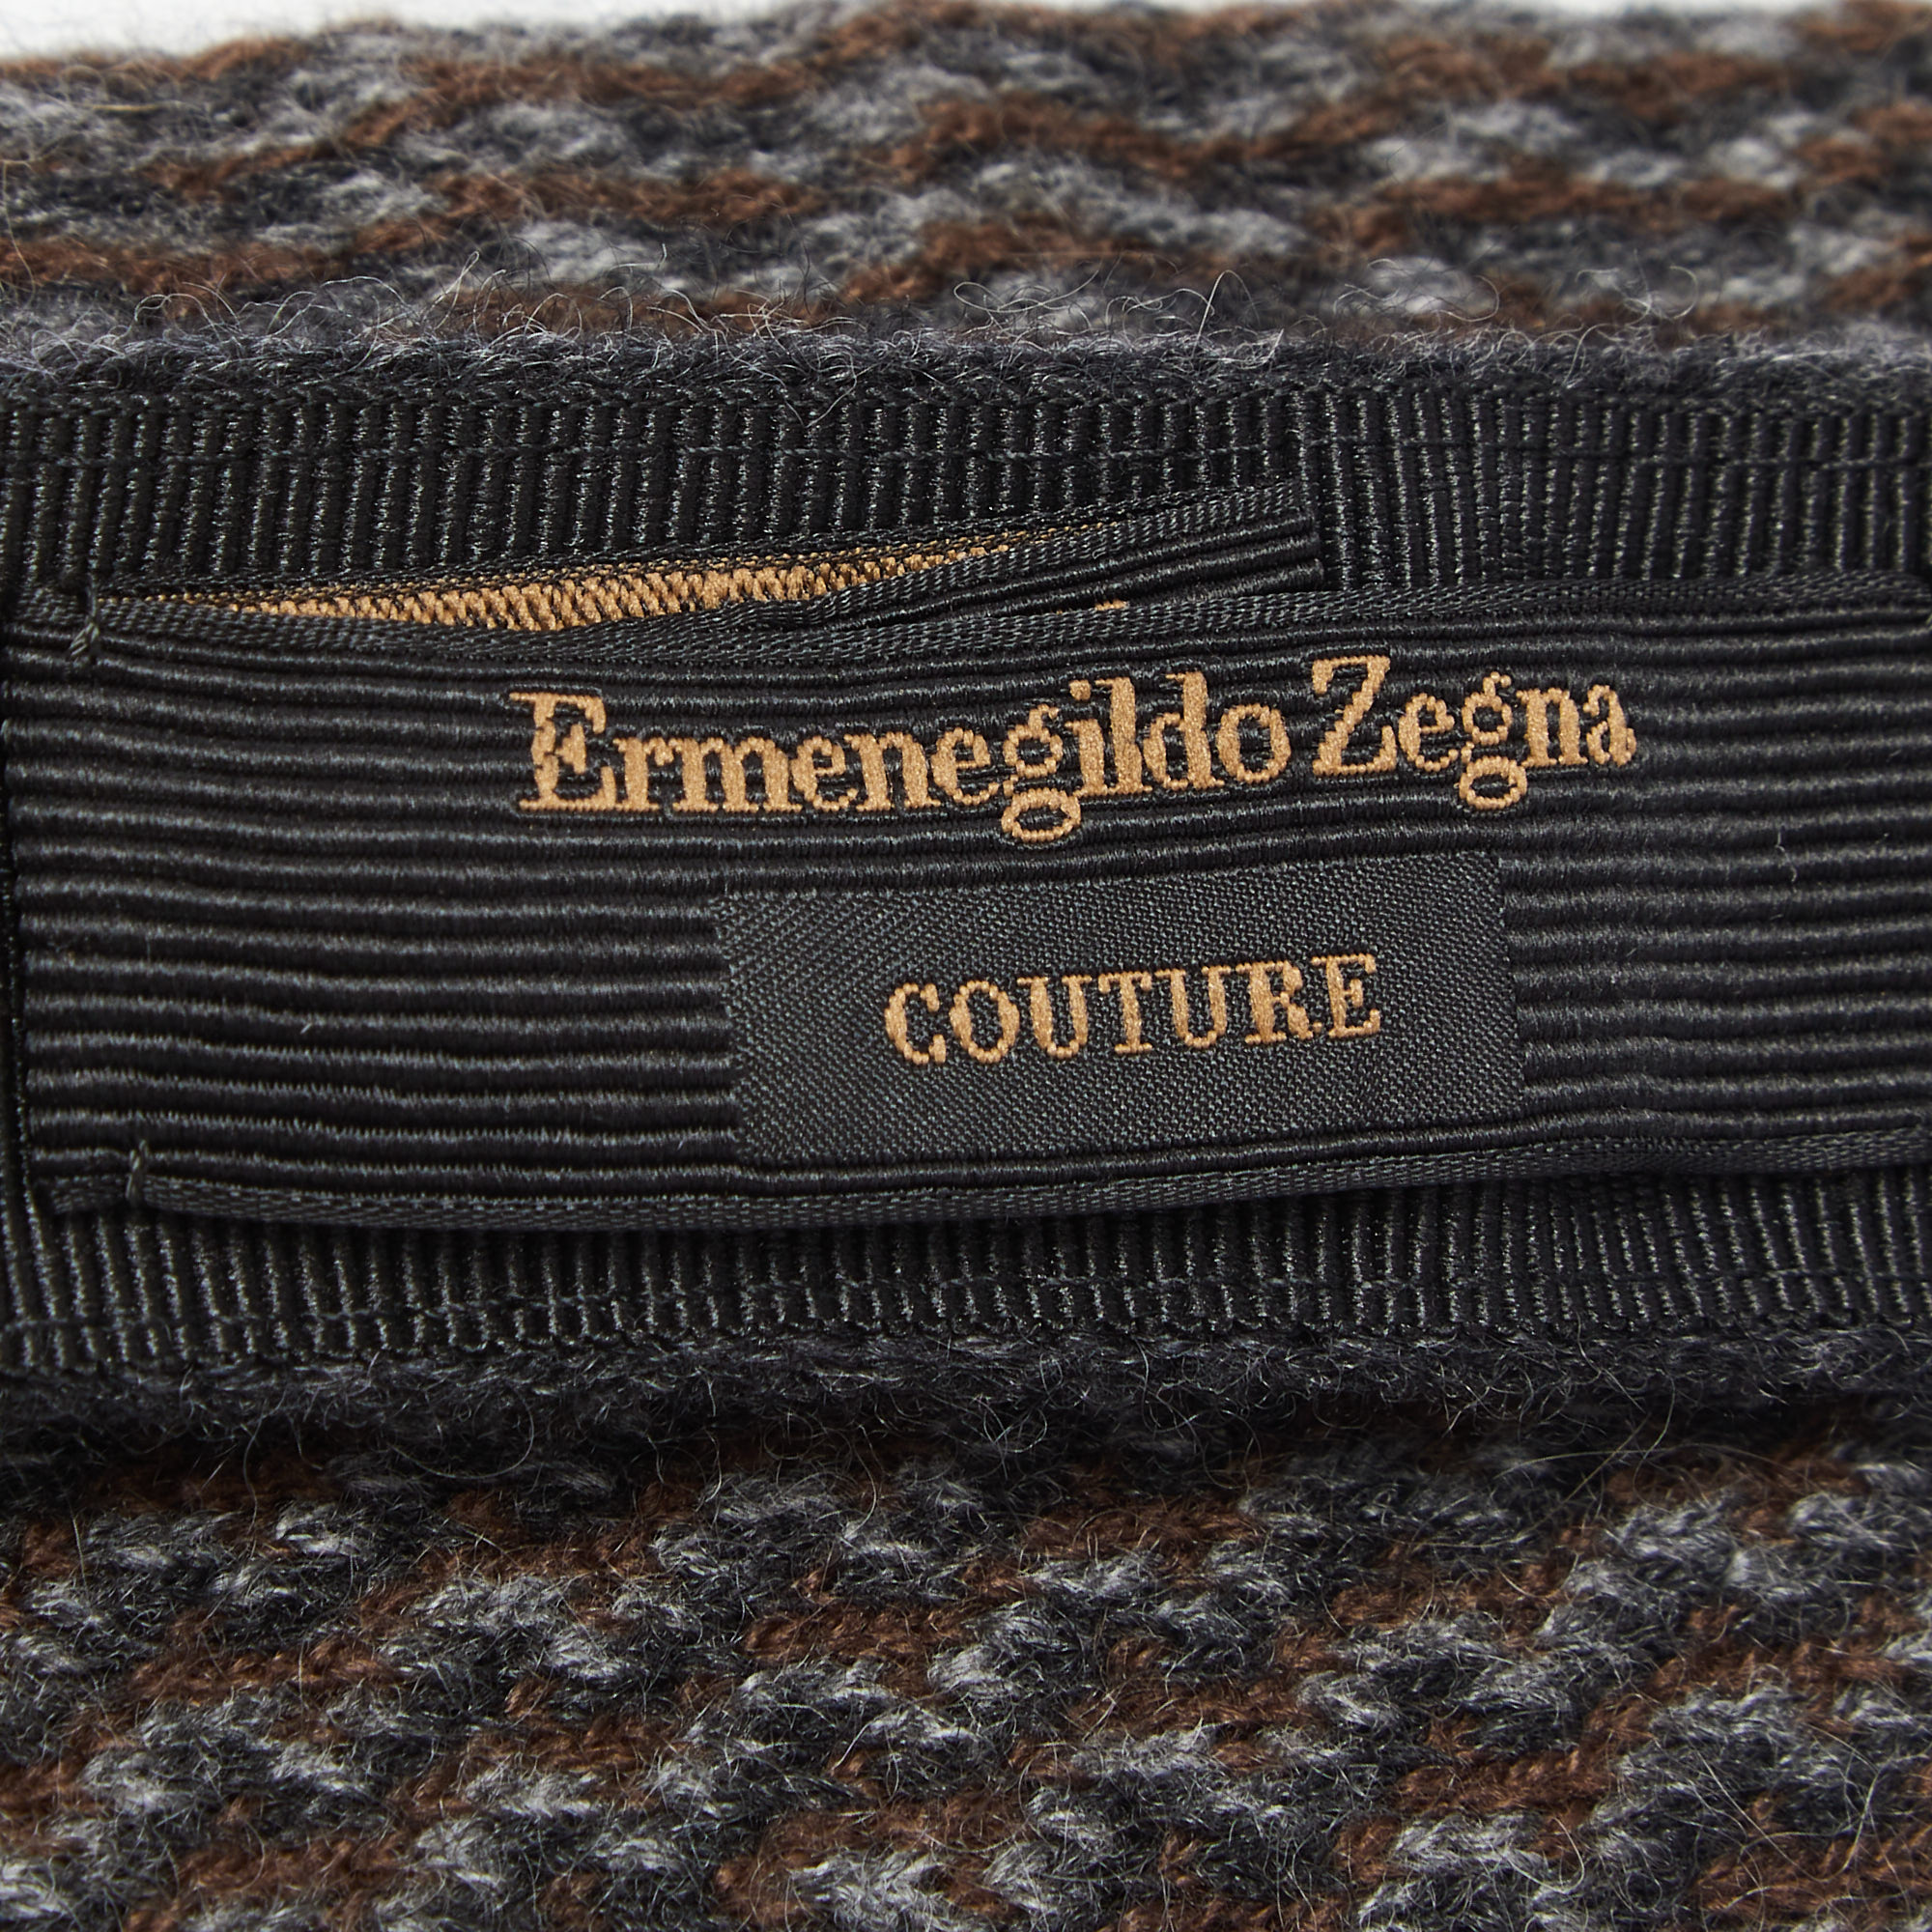 Ermenegildo Zegna Couture Bicolor Chevron Cashmere Knit Tie